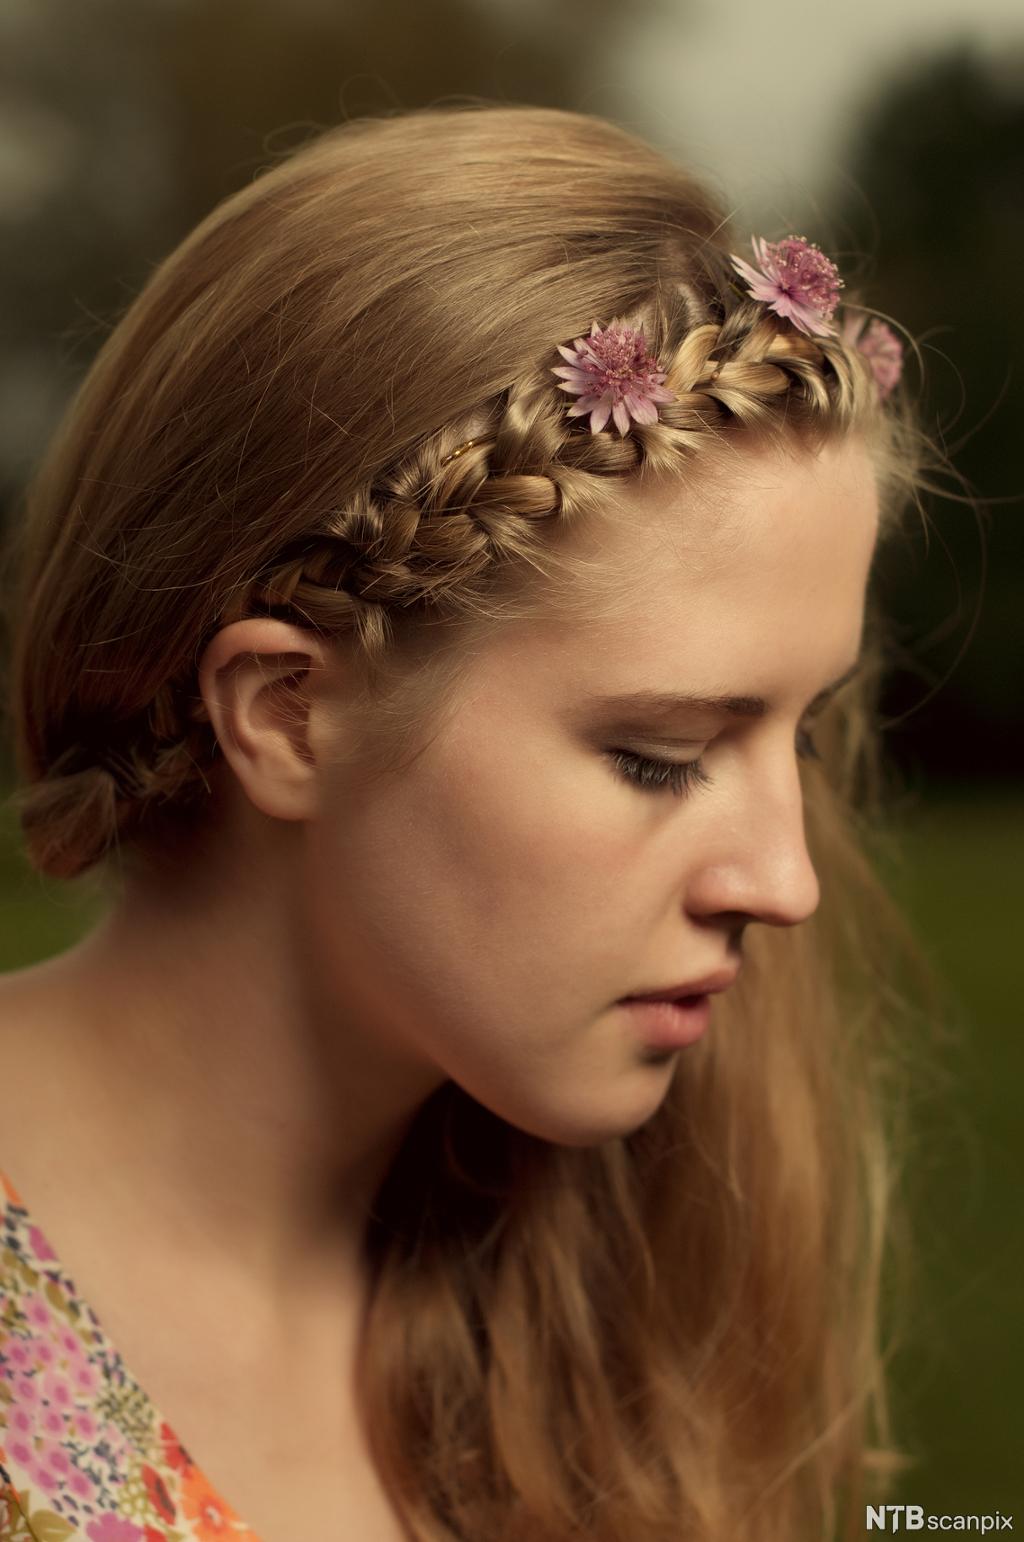 Flette og blomster i håret på ung kvinne. Foto.